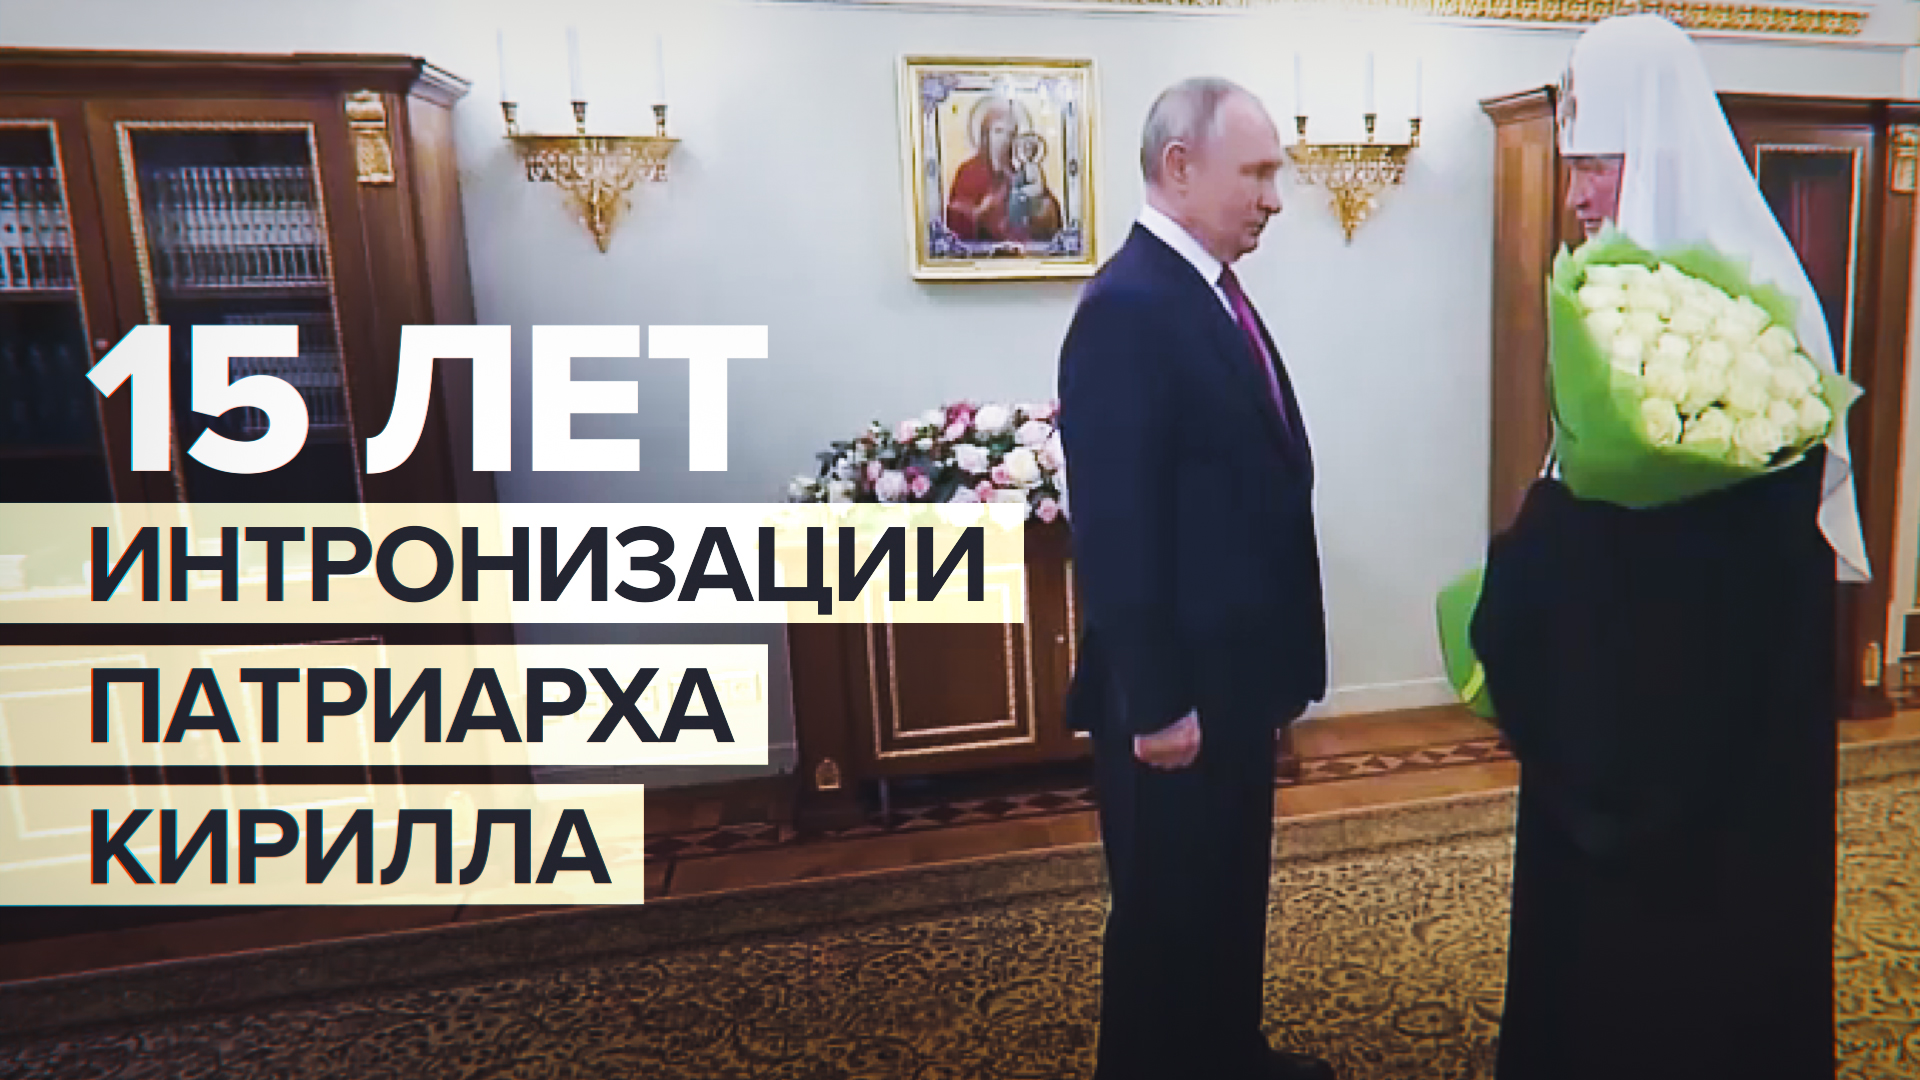 Путин поздравил патриарха Кирилла с 15-й годовщиной интронизации